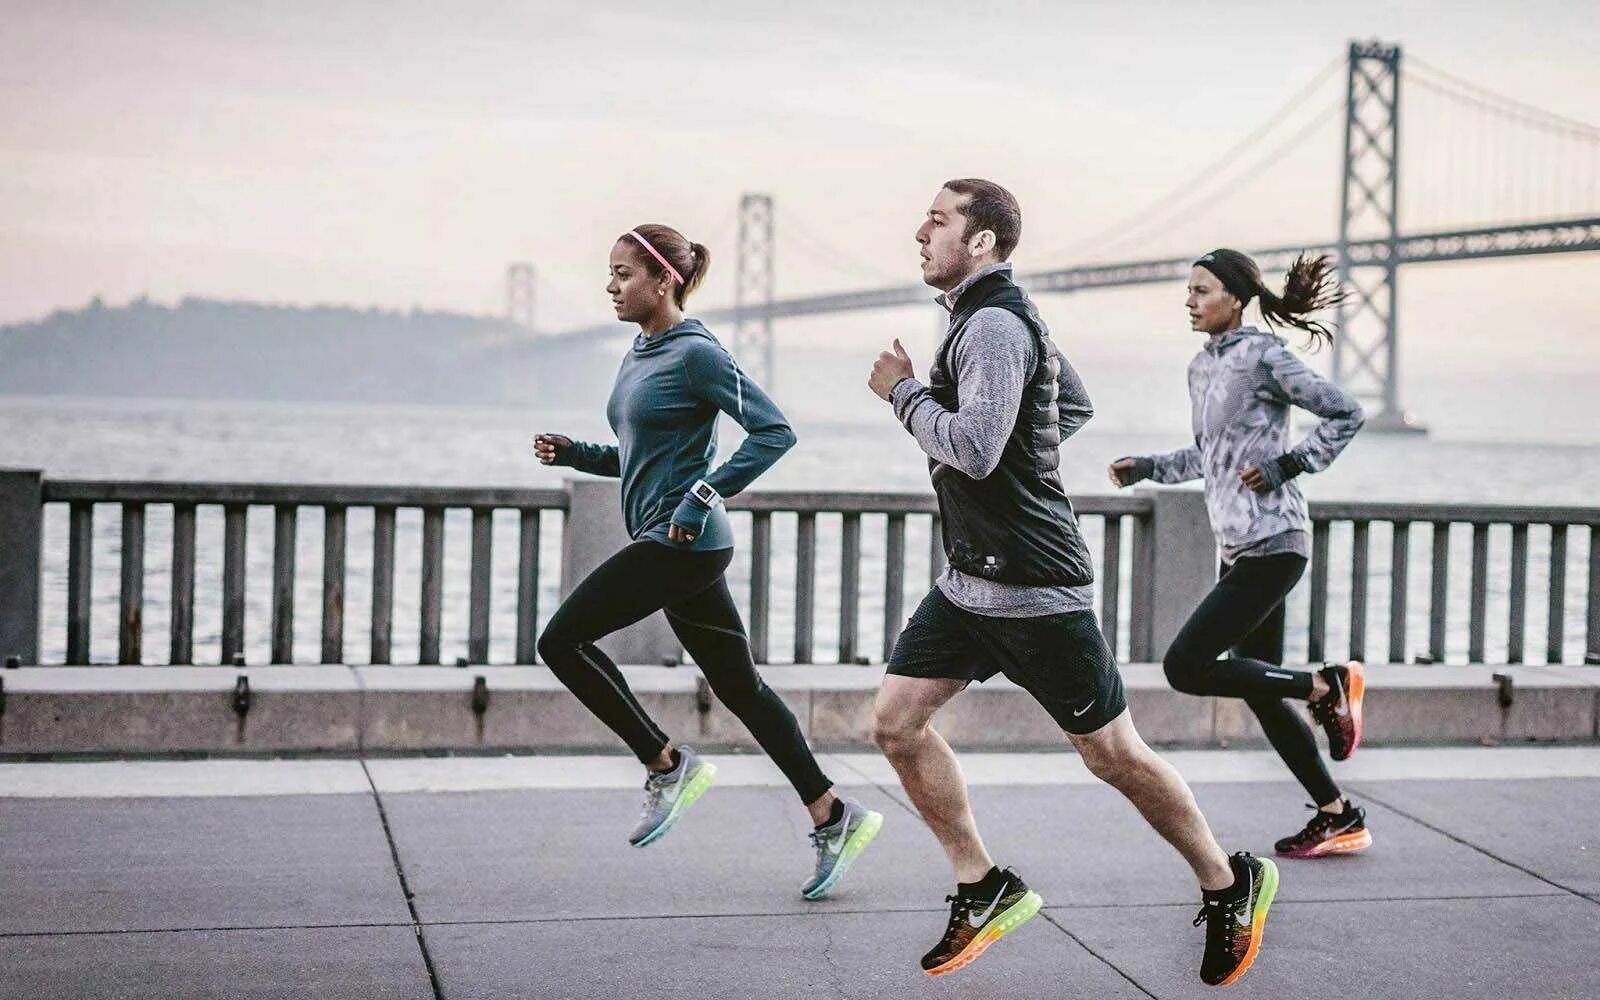 Nike Running. Nike Running бег. Занятие спортом. Фотосессия в спортивном стиле. Спортсмен будет бежать